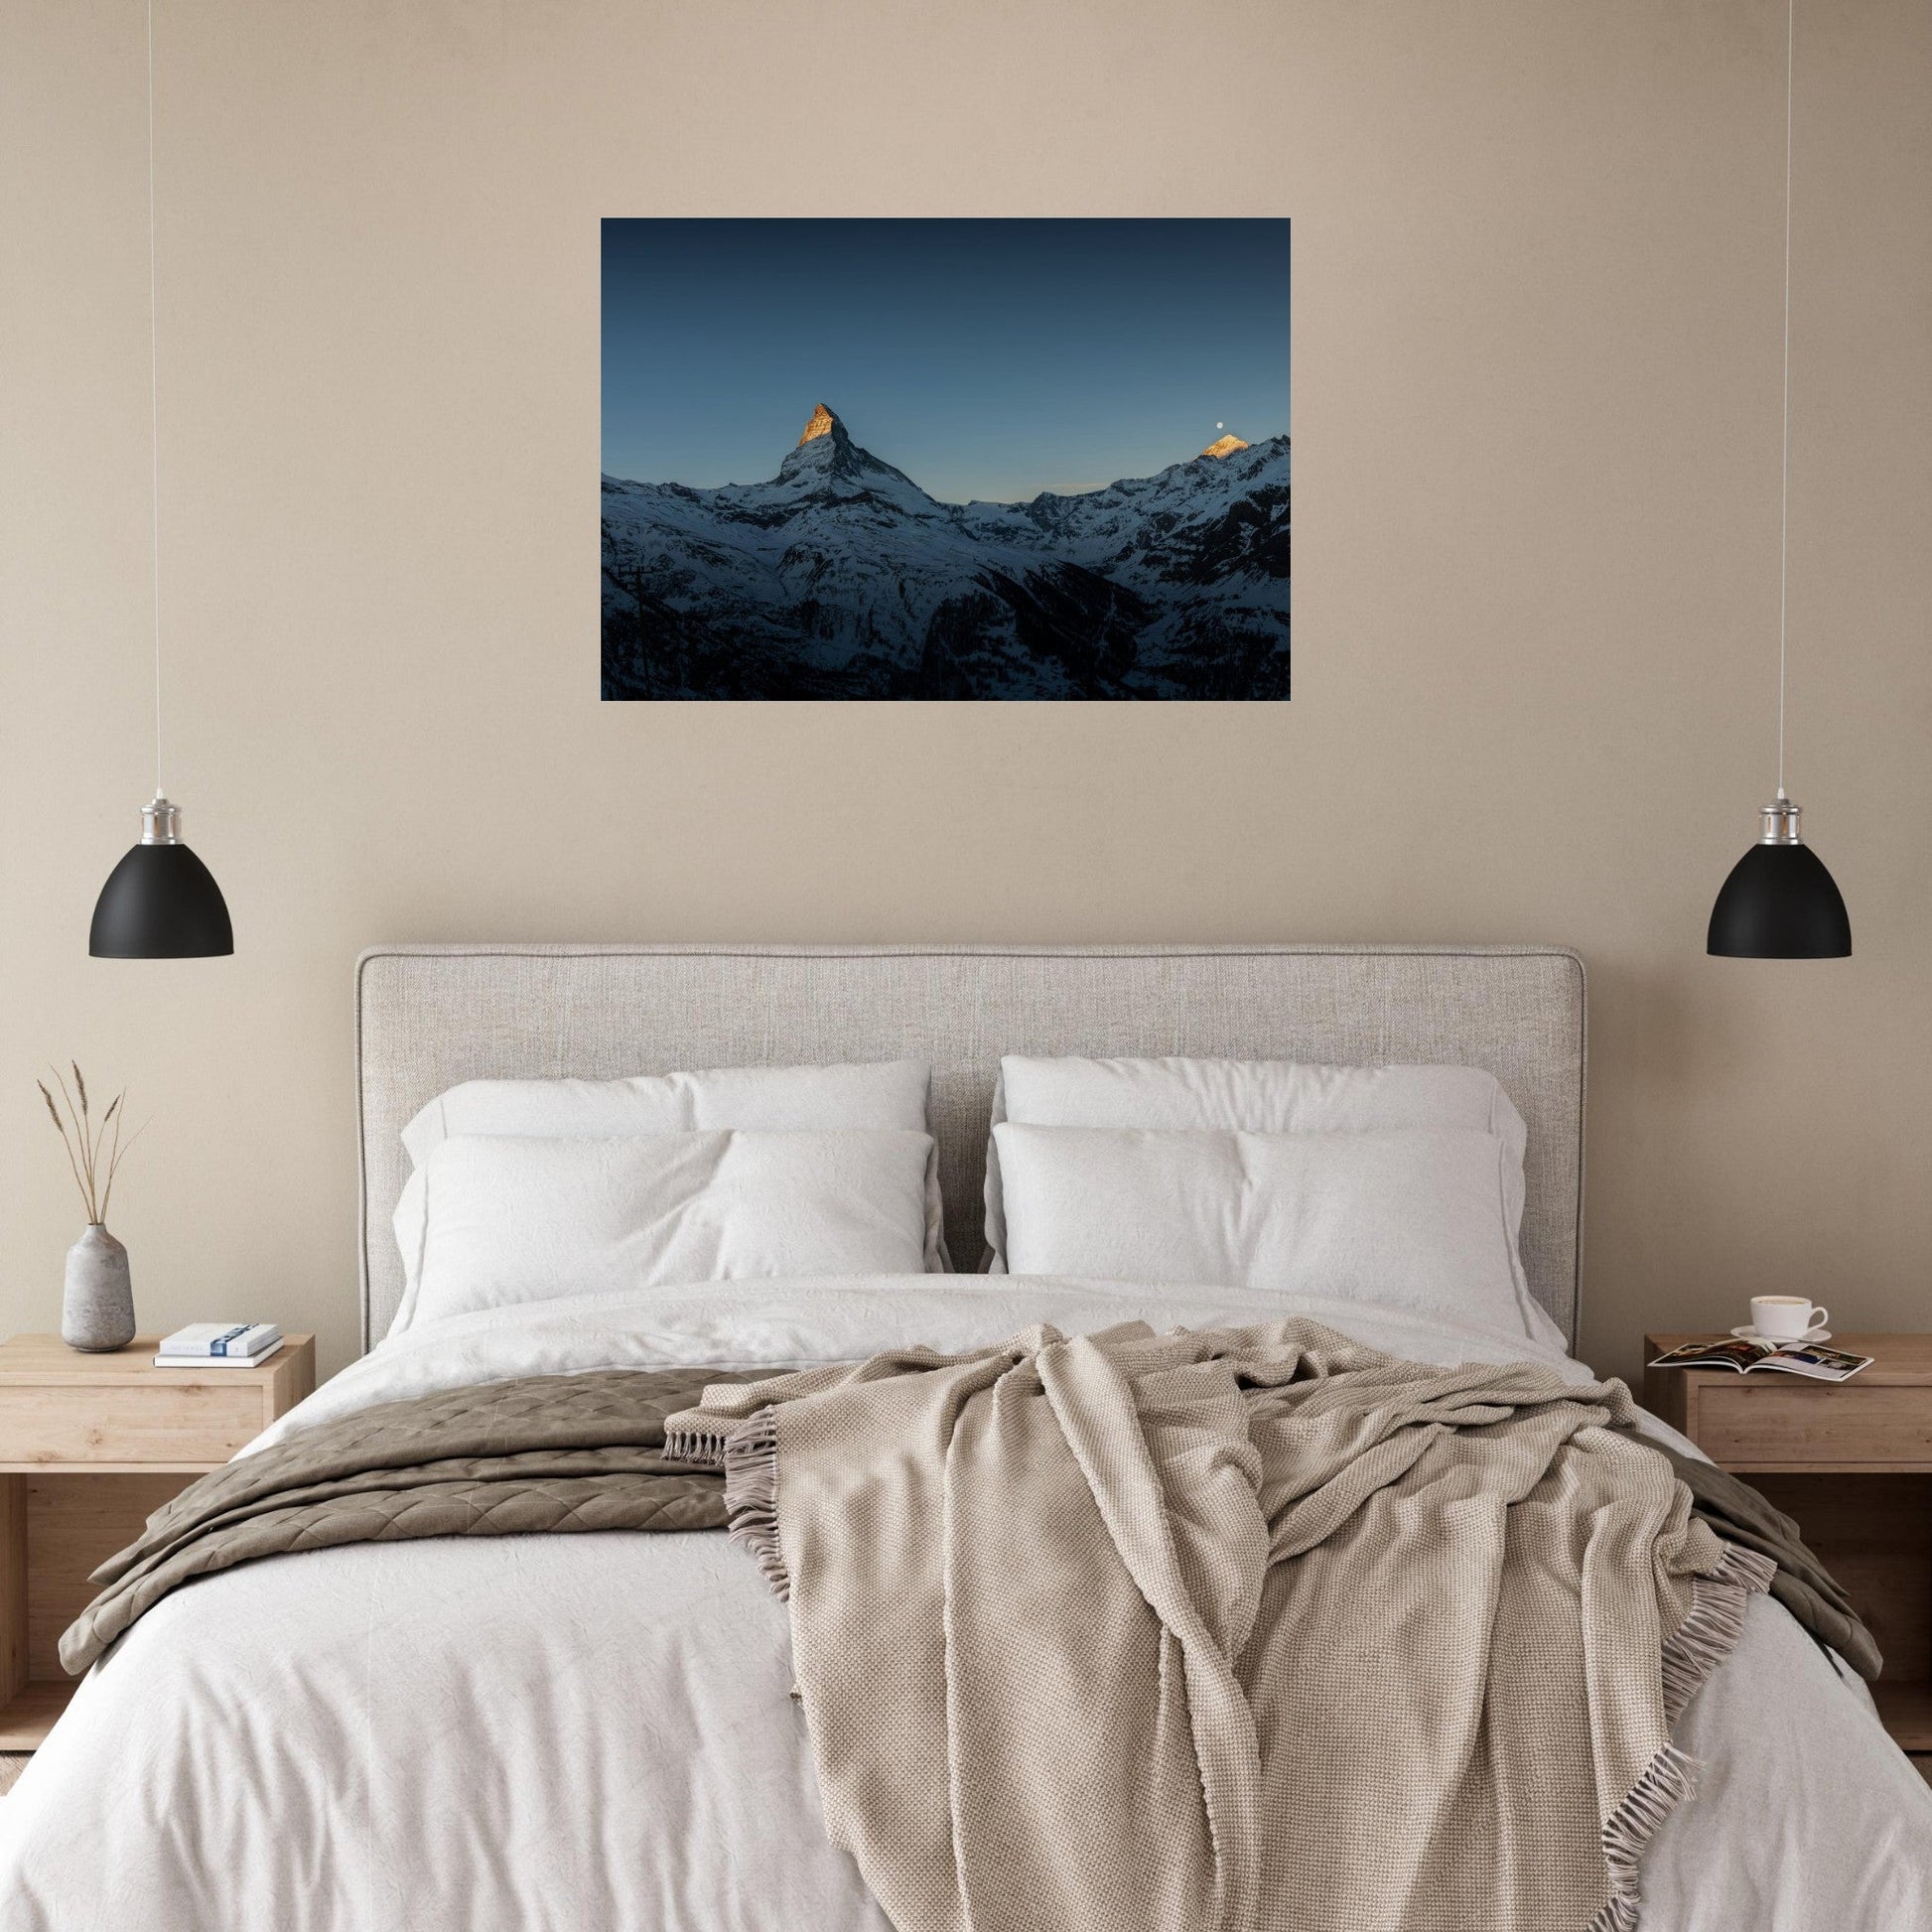 Vente Photo d'un lever soleil sur le Cervin et la lune, Suisse - Tableau photo alu montagne